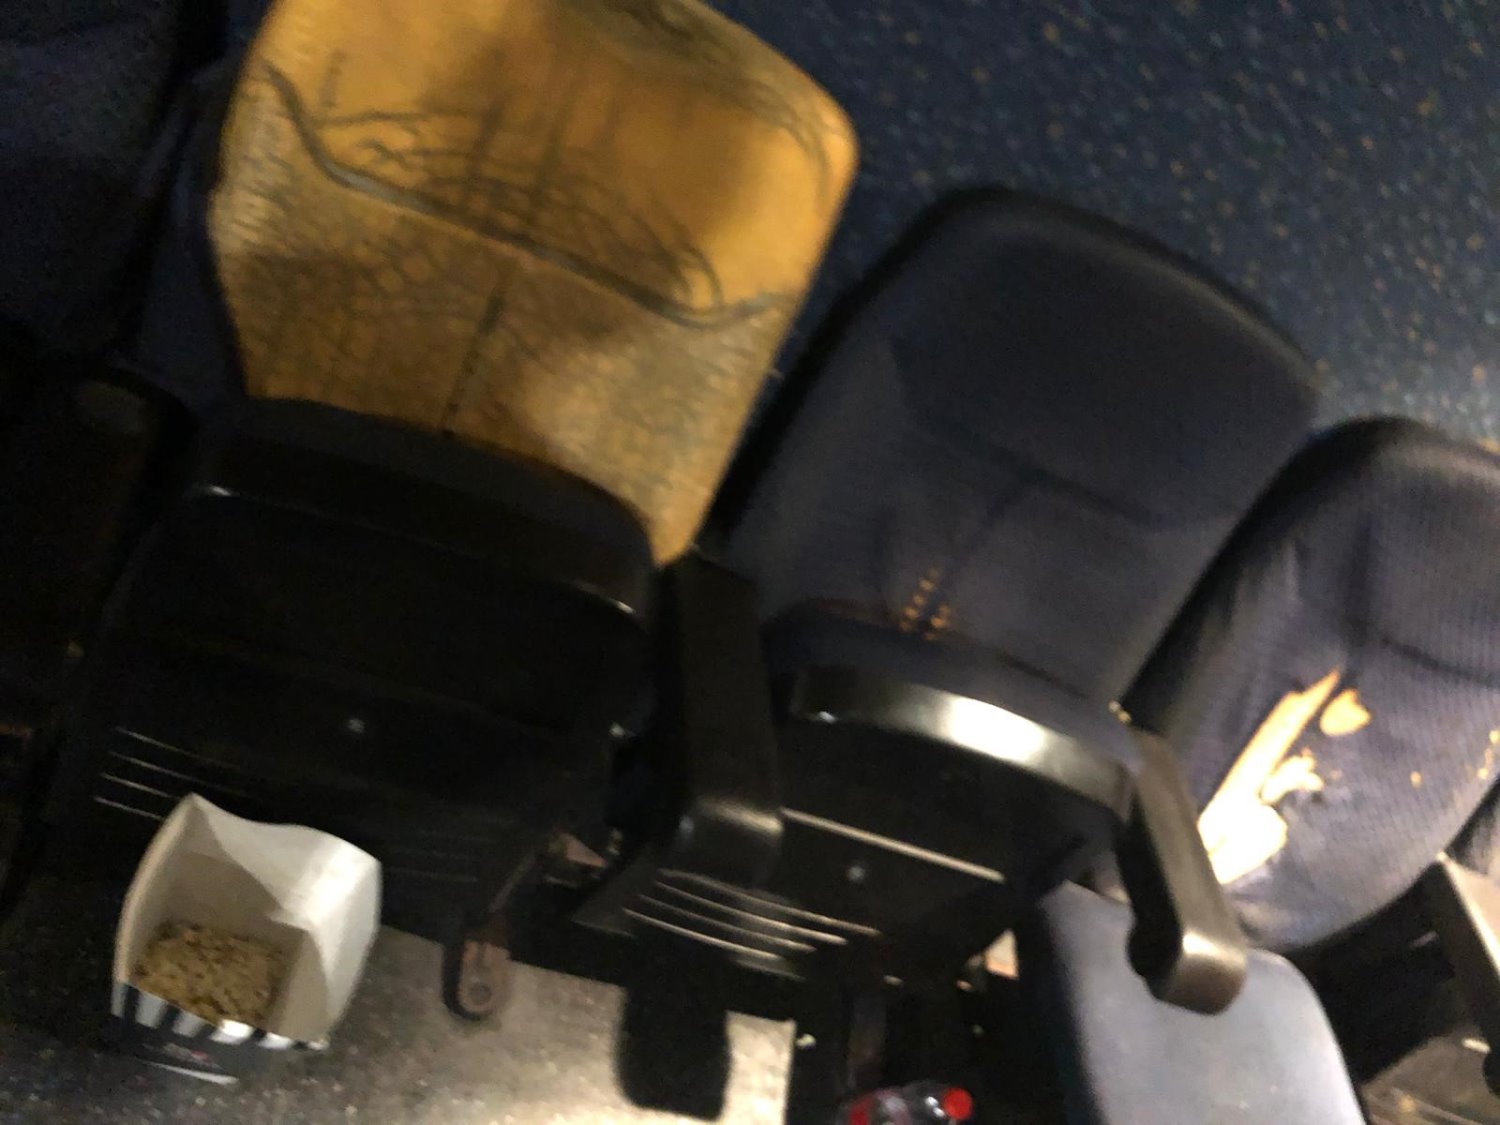 הכיסאות הקרועים והשבורים בבית הקולנוע באשדוד